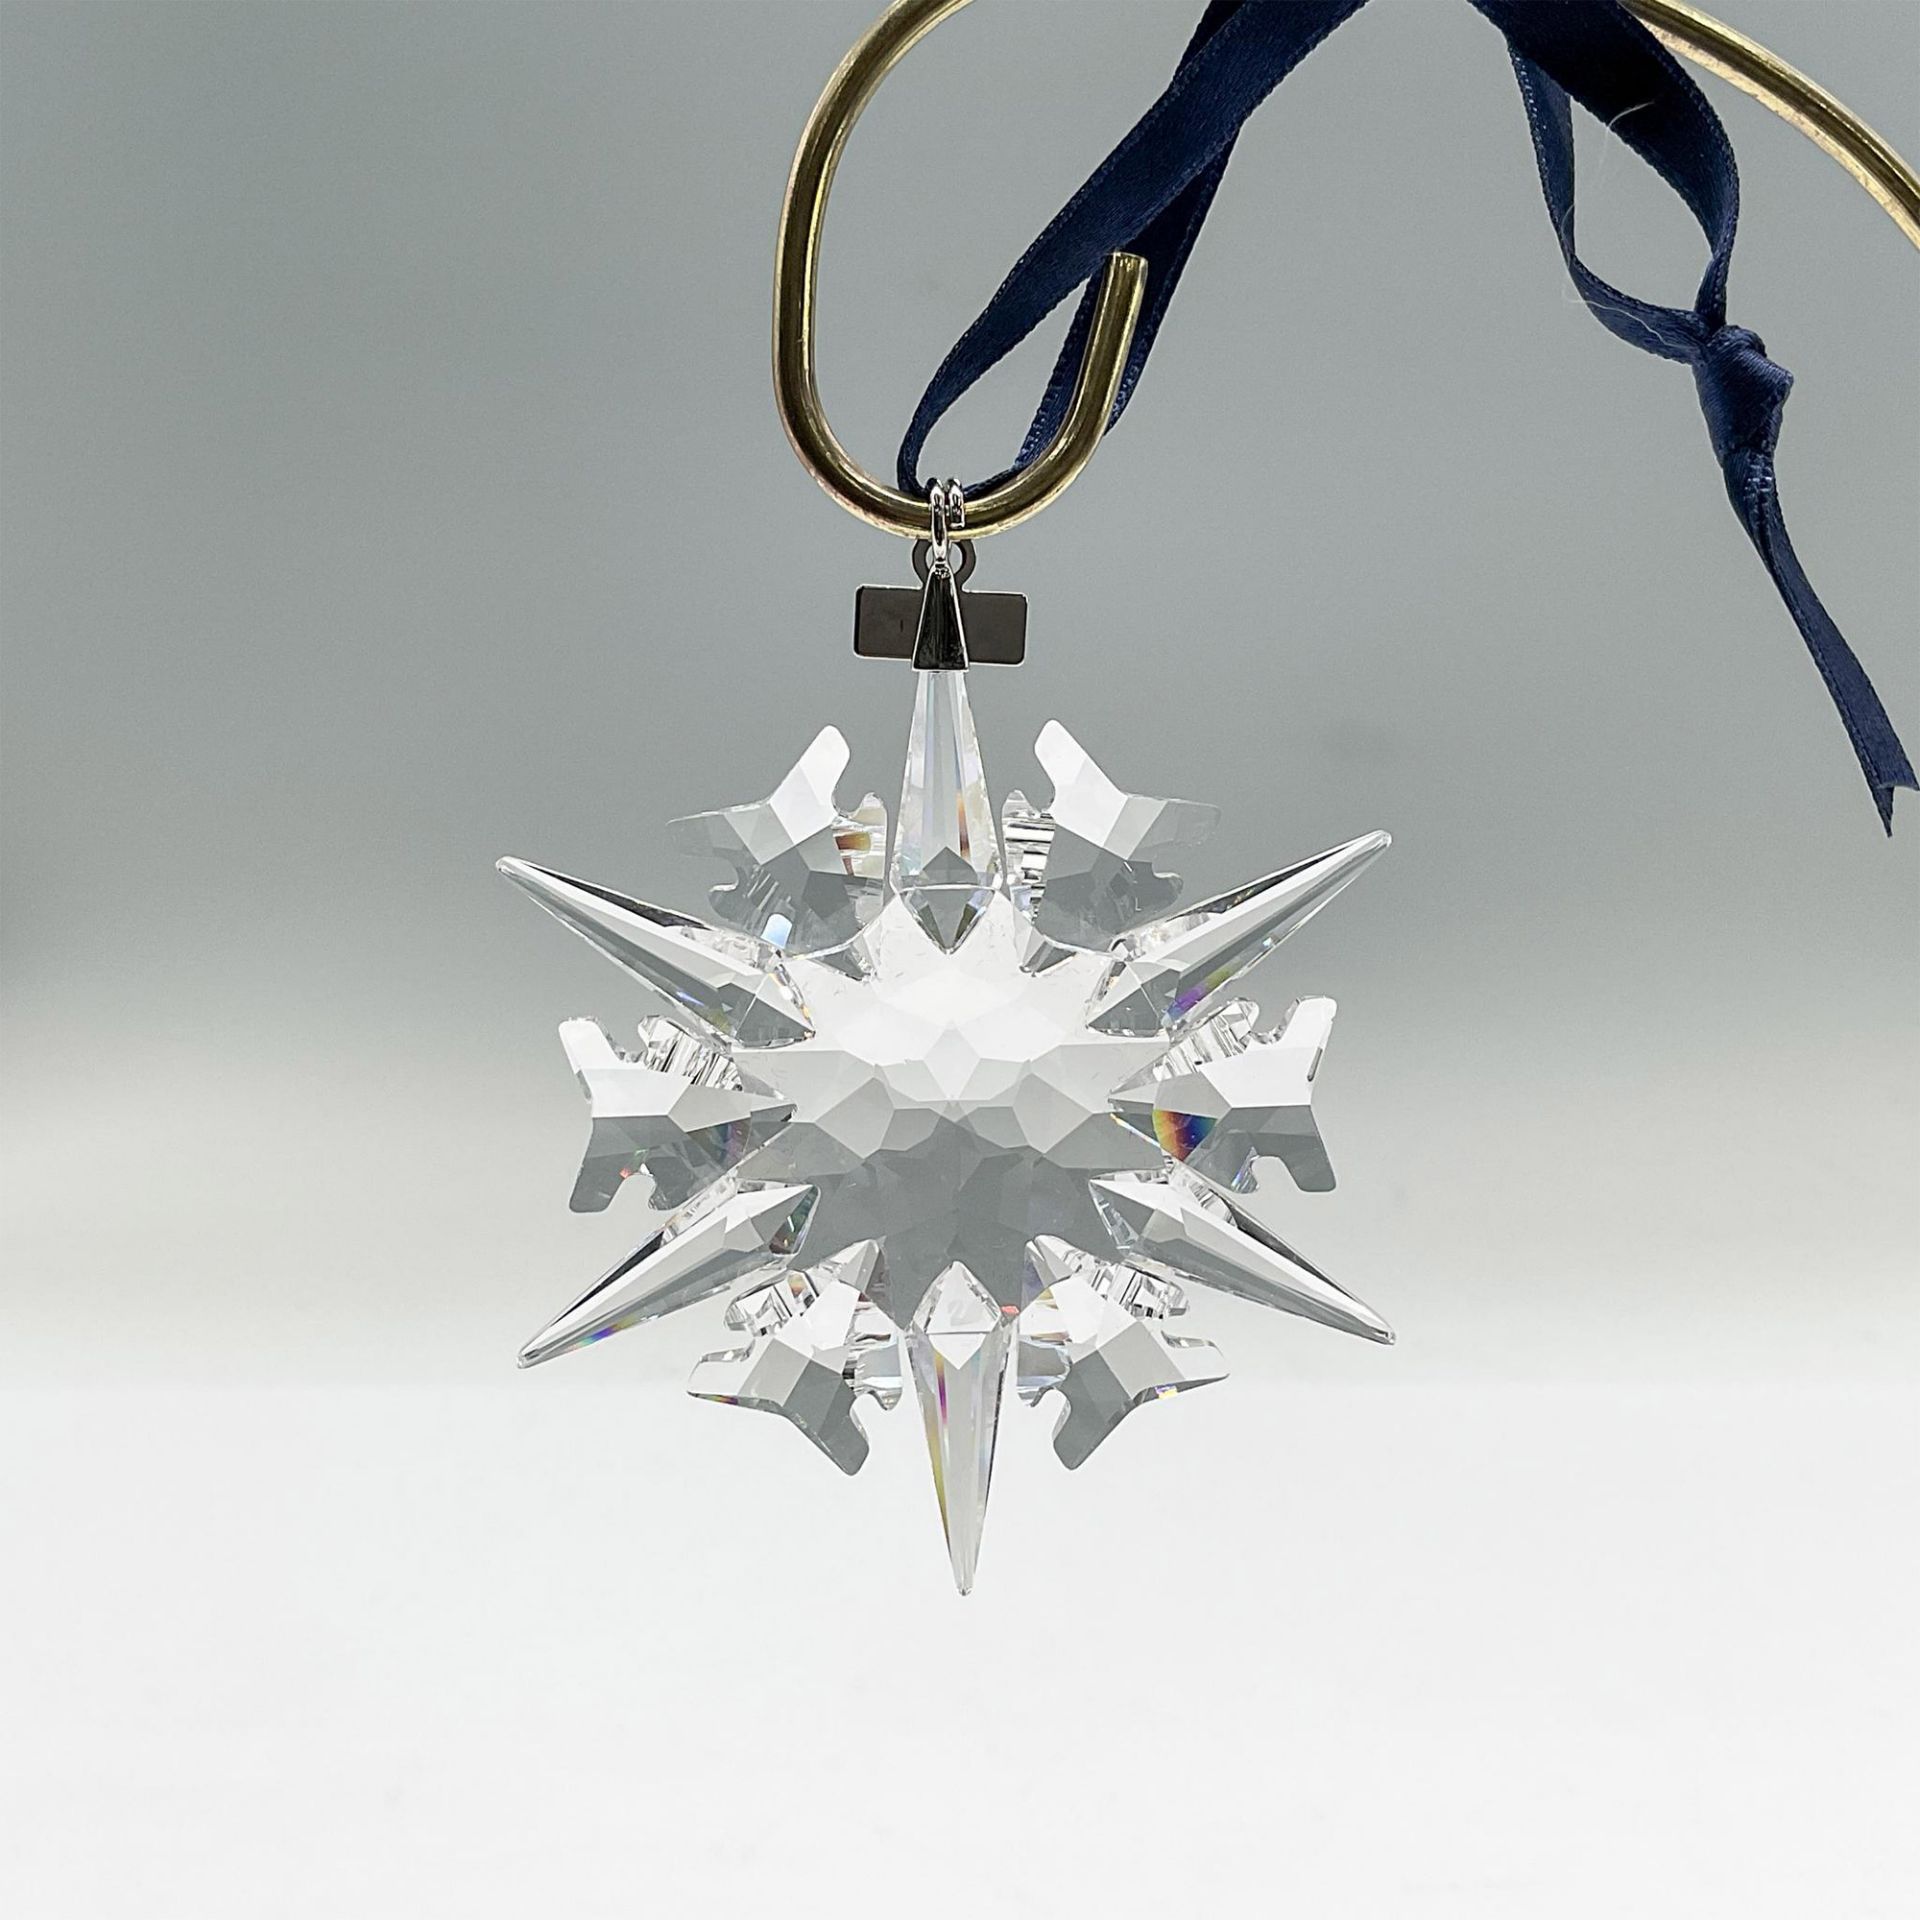 Swarovski Crystal Christmas Ornament 2002 - Image 2 of 3